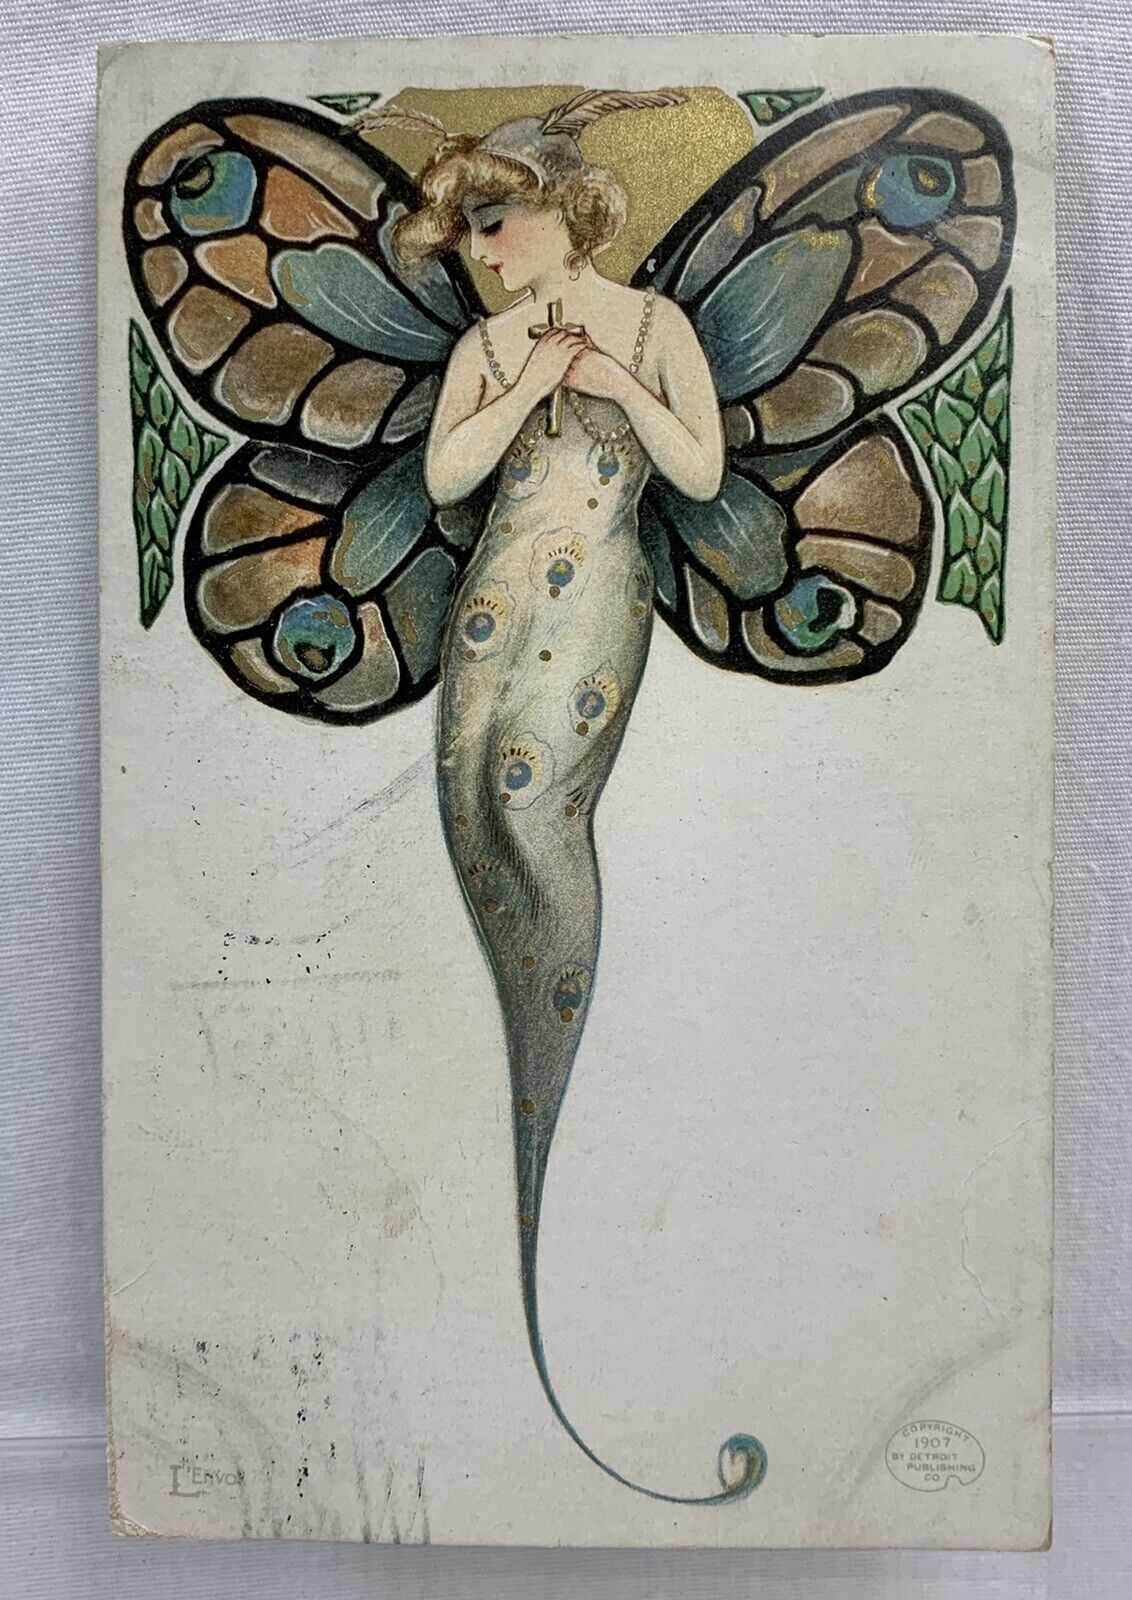 Schmucker Nouveau Beautiful Butterfly Girls Series L'Envoi Detroit Pub. Co 1907